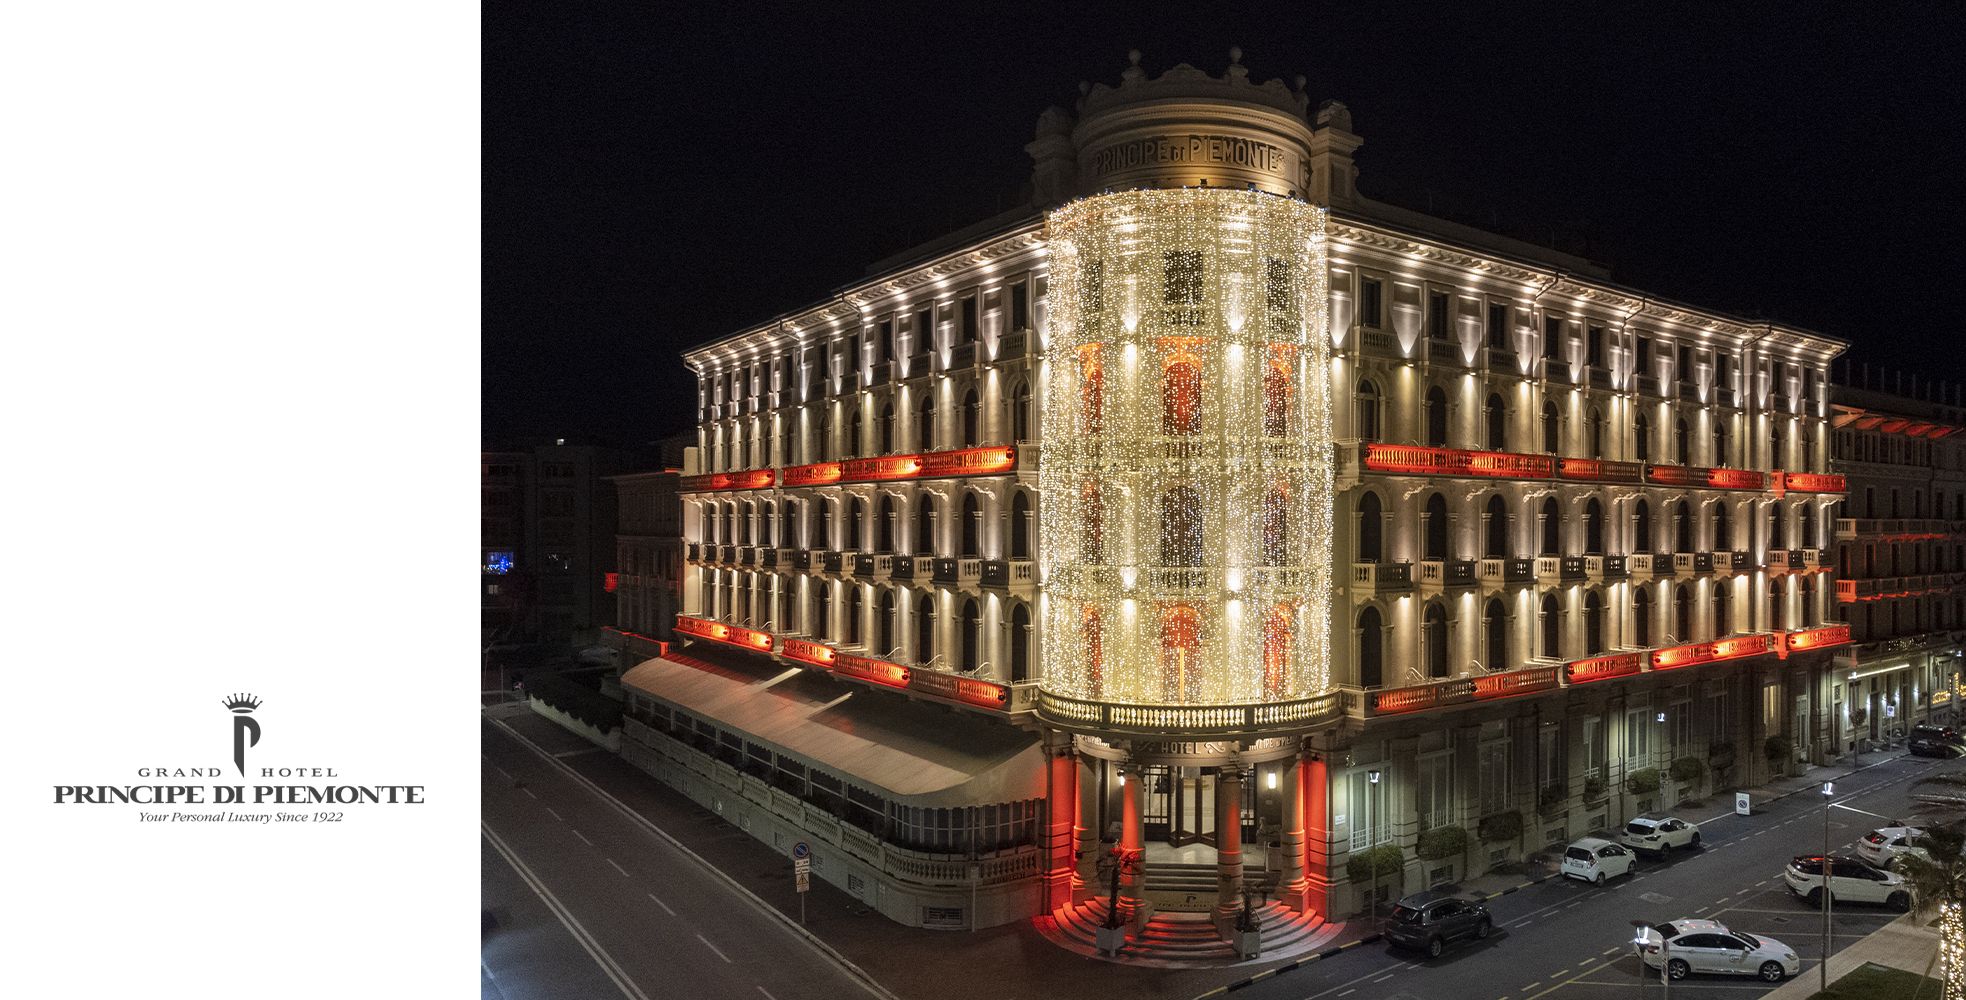 Grand Hotel Principe di Piemonte Viareggio, immagini natalizie